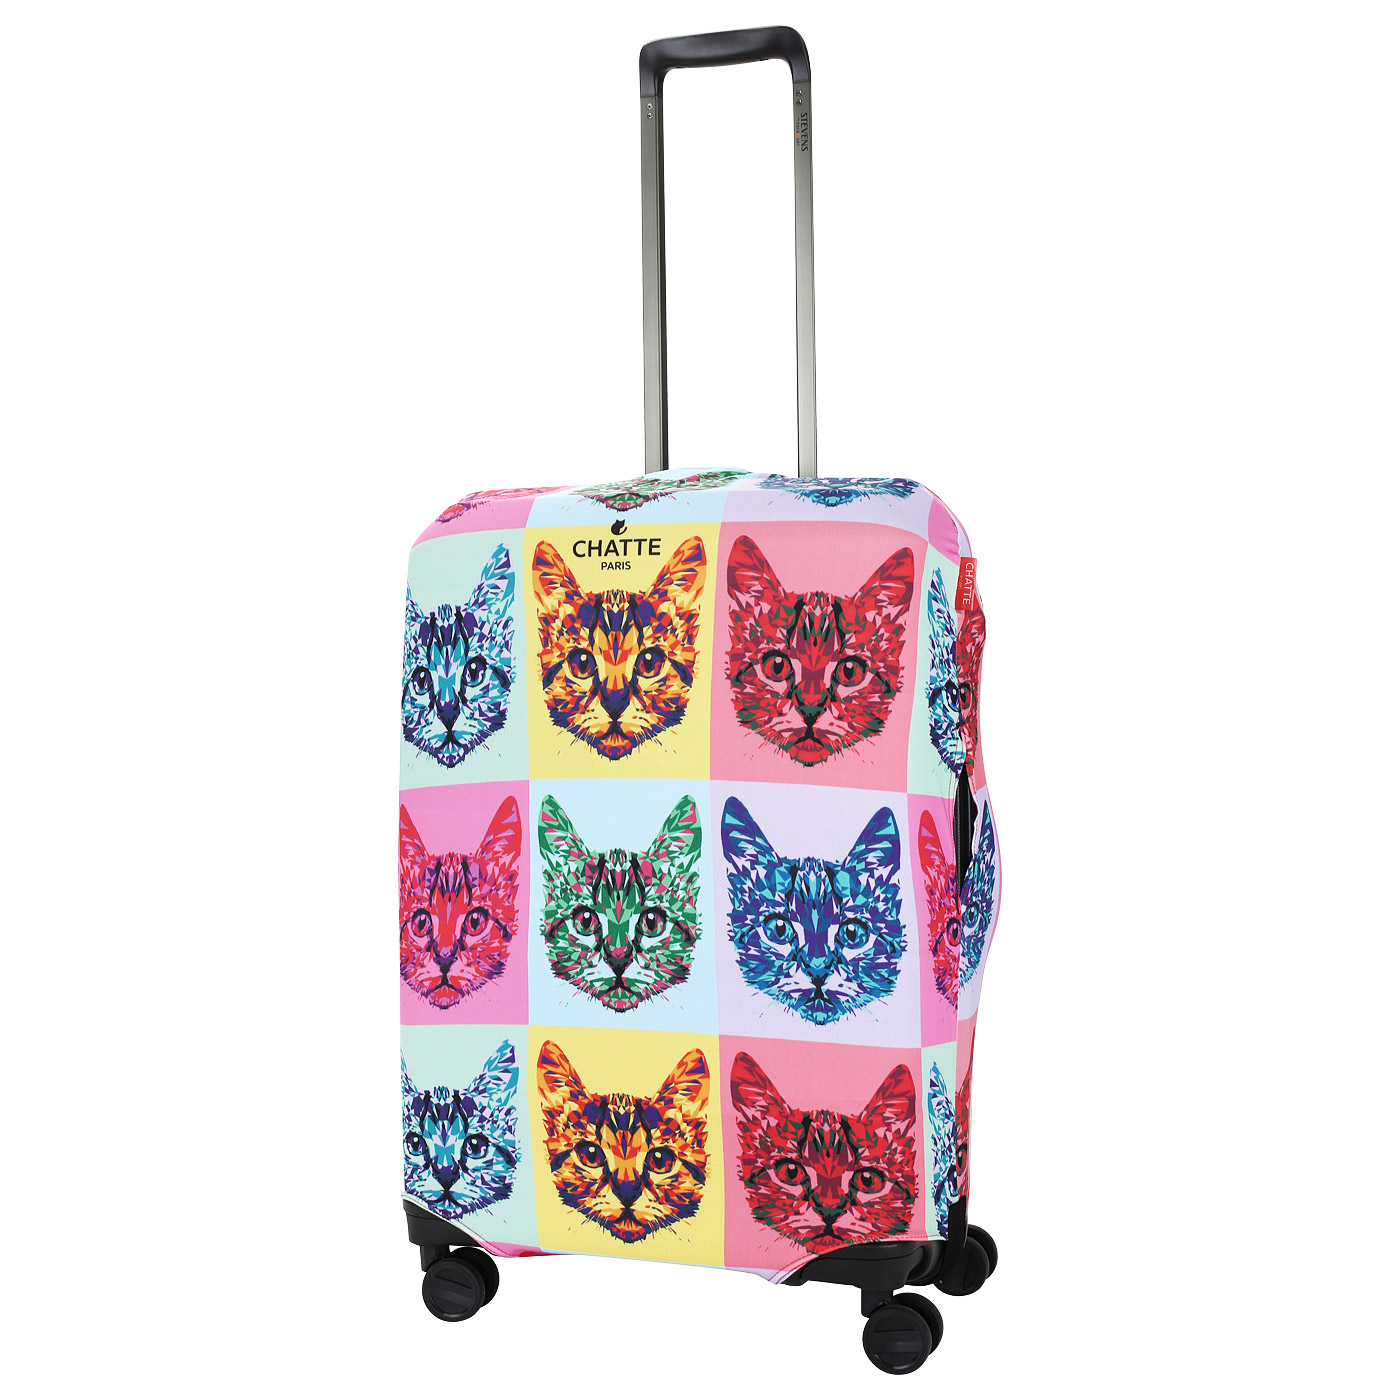 Чехол для компактного чемодана с ярким принтом Chatte Cats